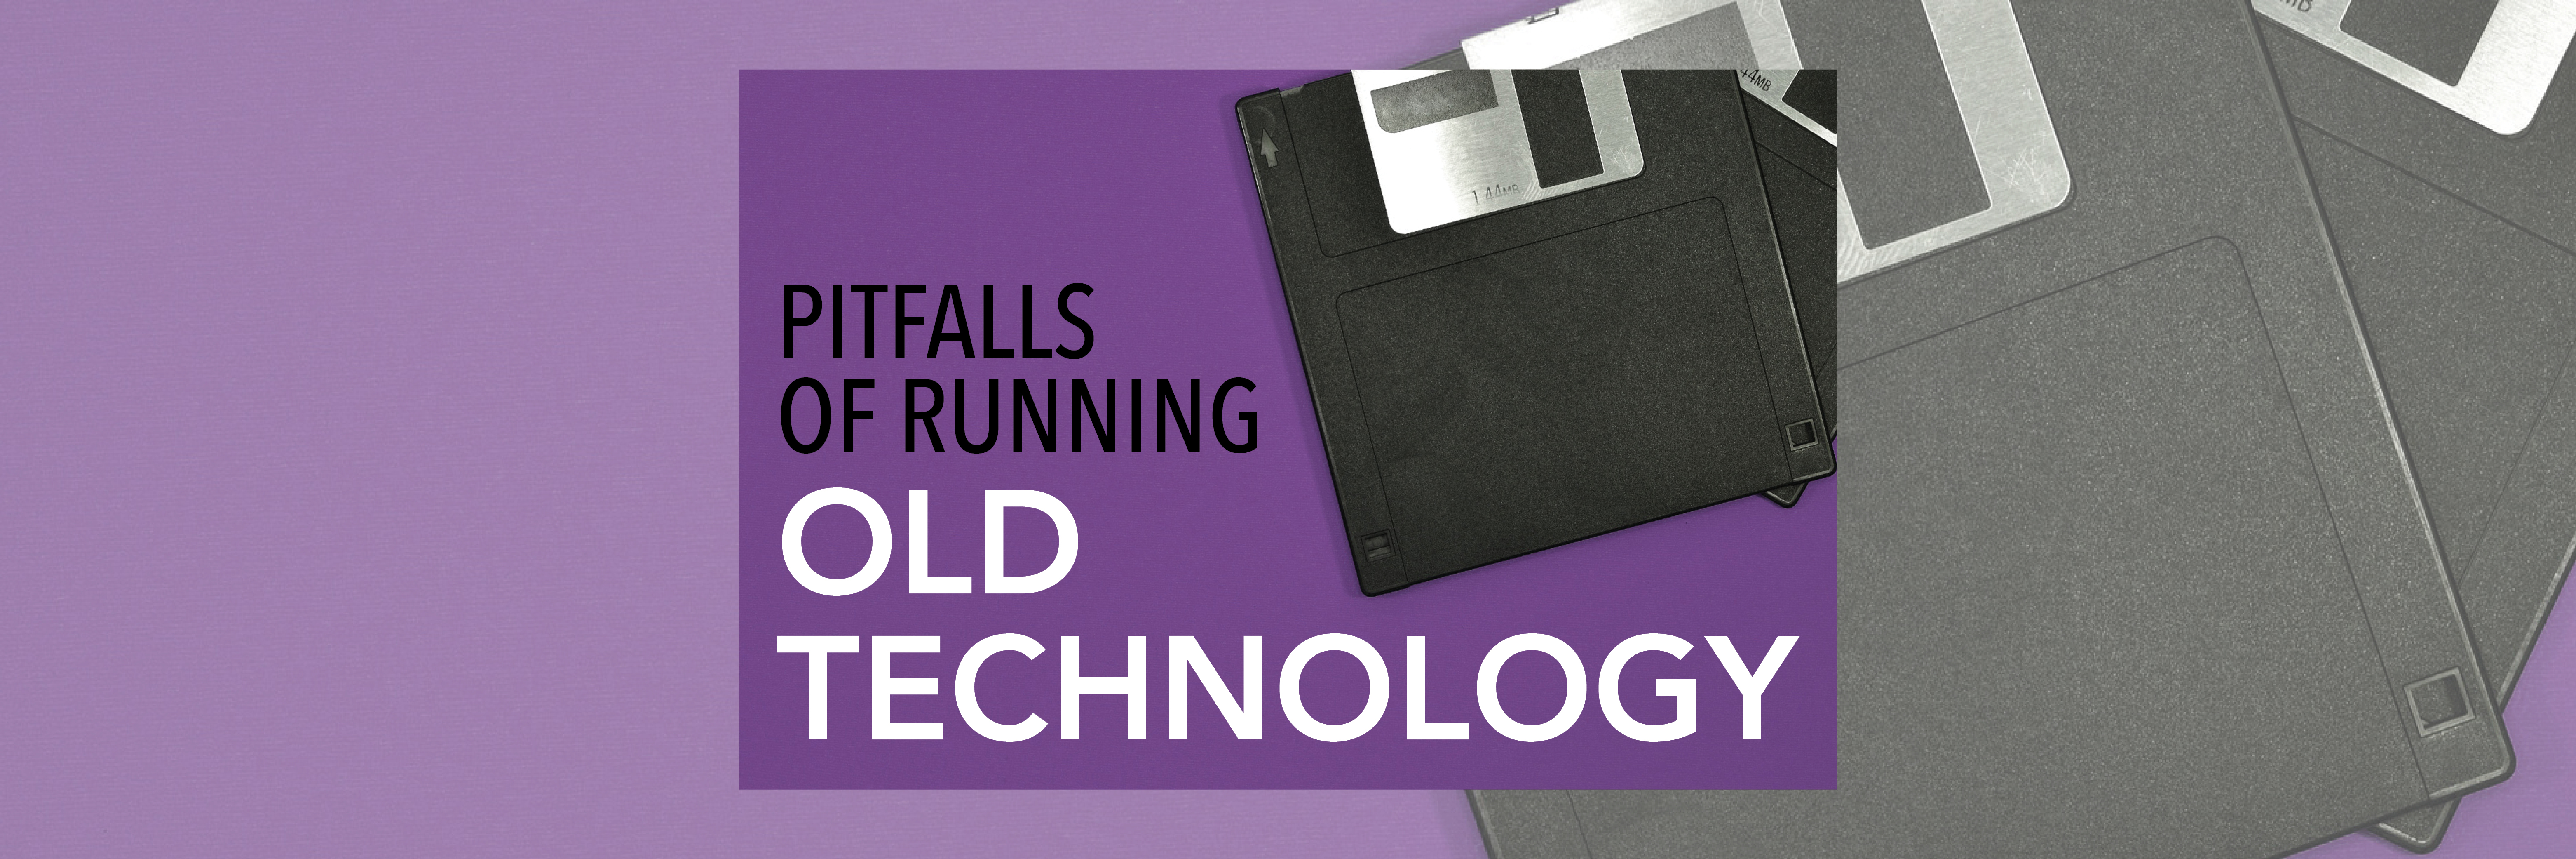 Pitfalls of Old Tech Blog Header 070121 (002)